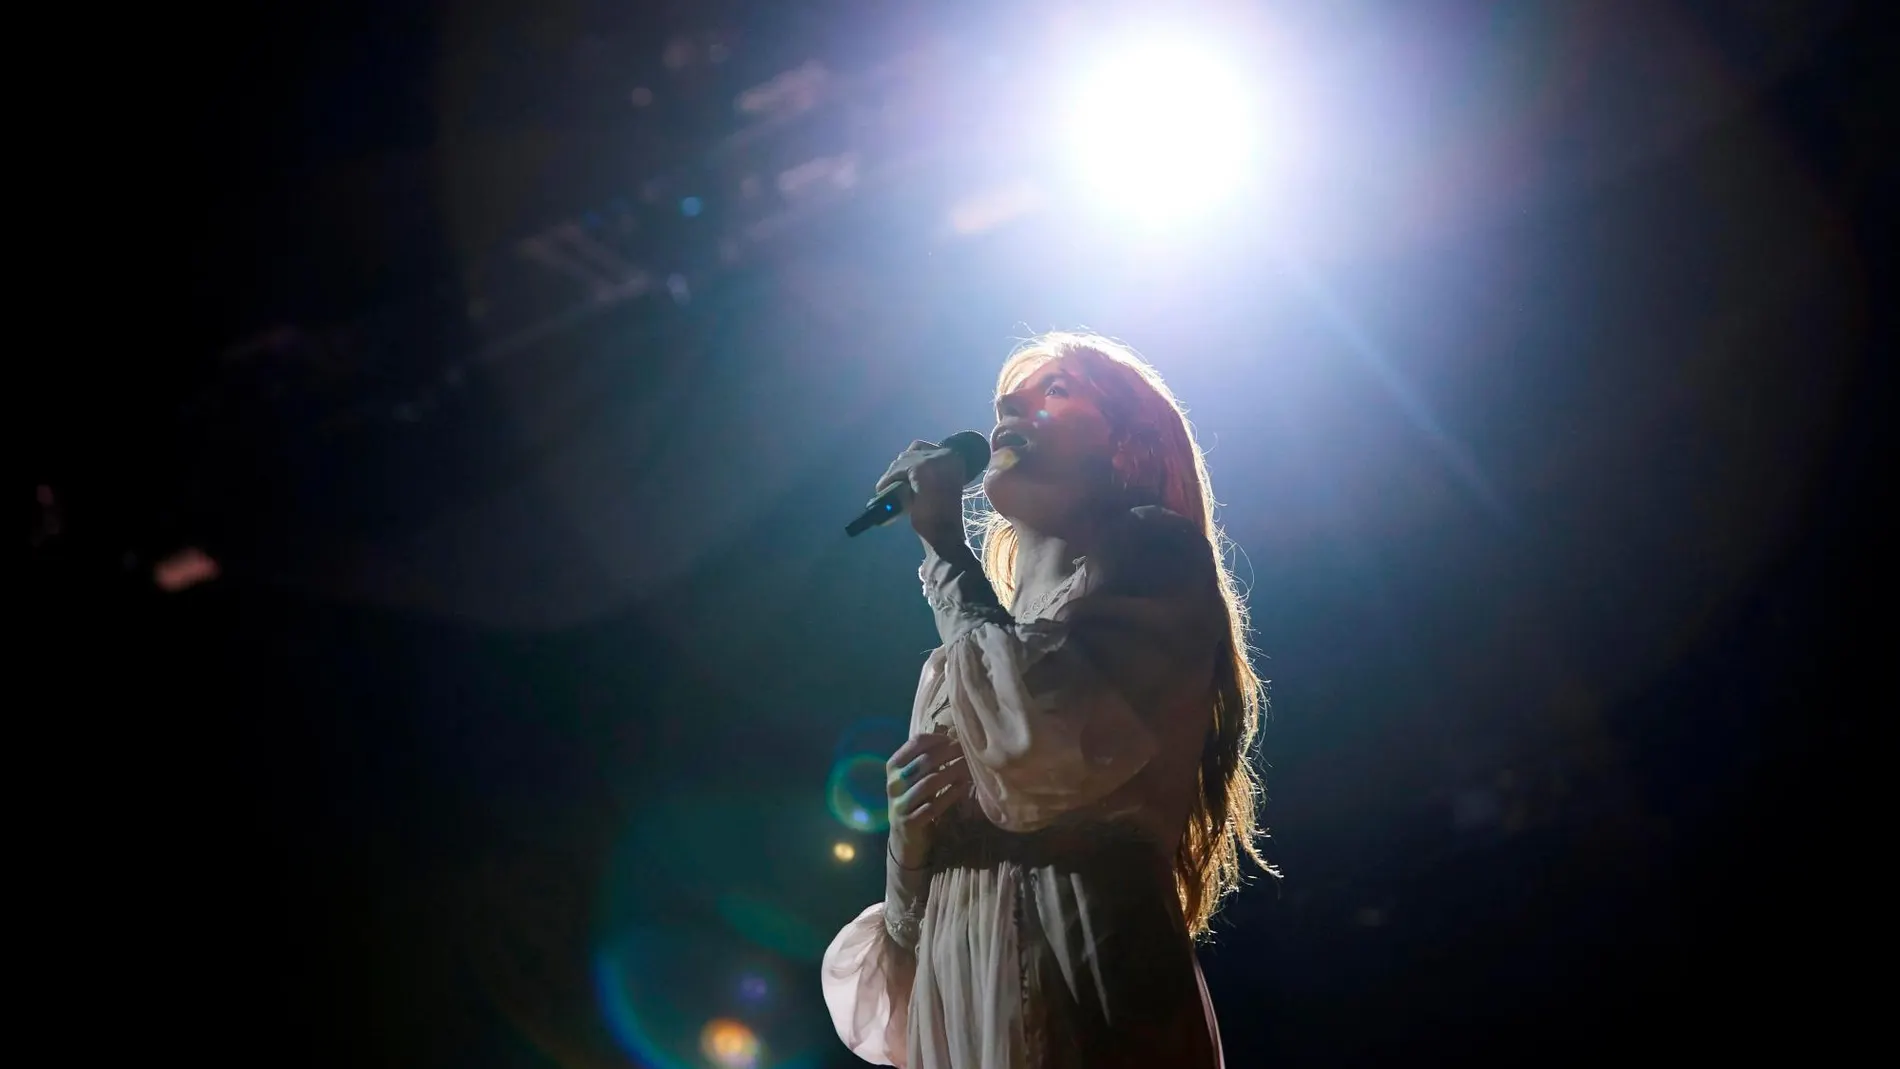 La banda británica de indie rock Florence and the Machine, liderada por la cantante Florence Welch, desembarcó anoche en el Palau Sant Jordi de Barcelona